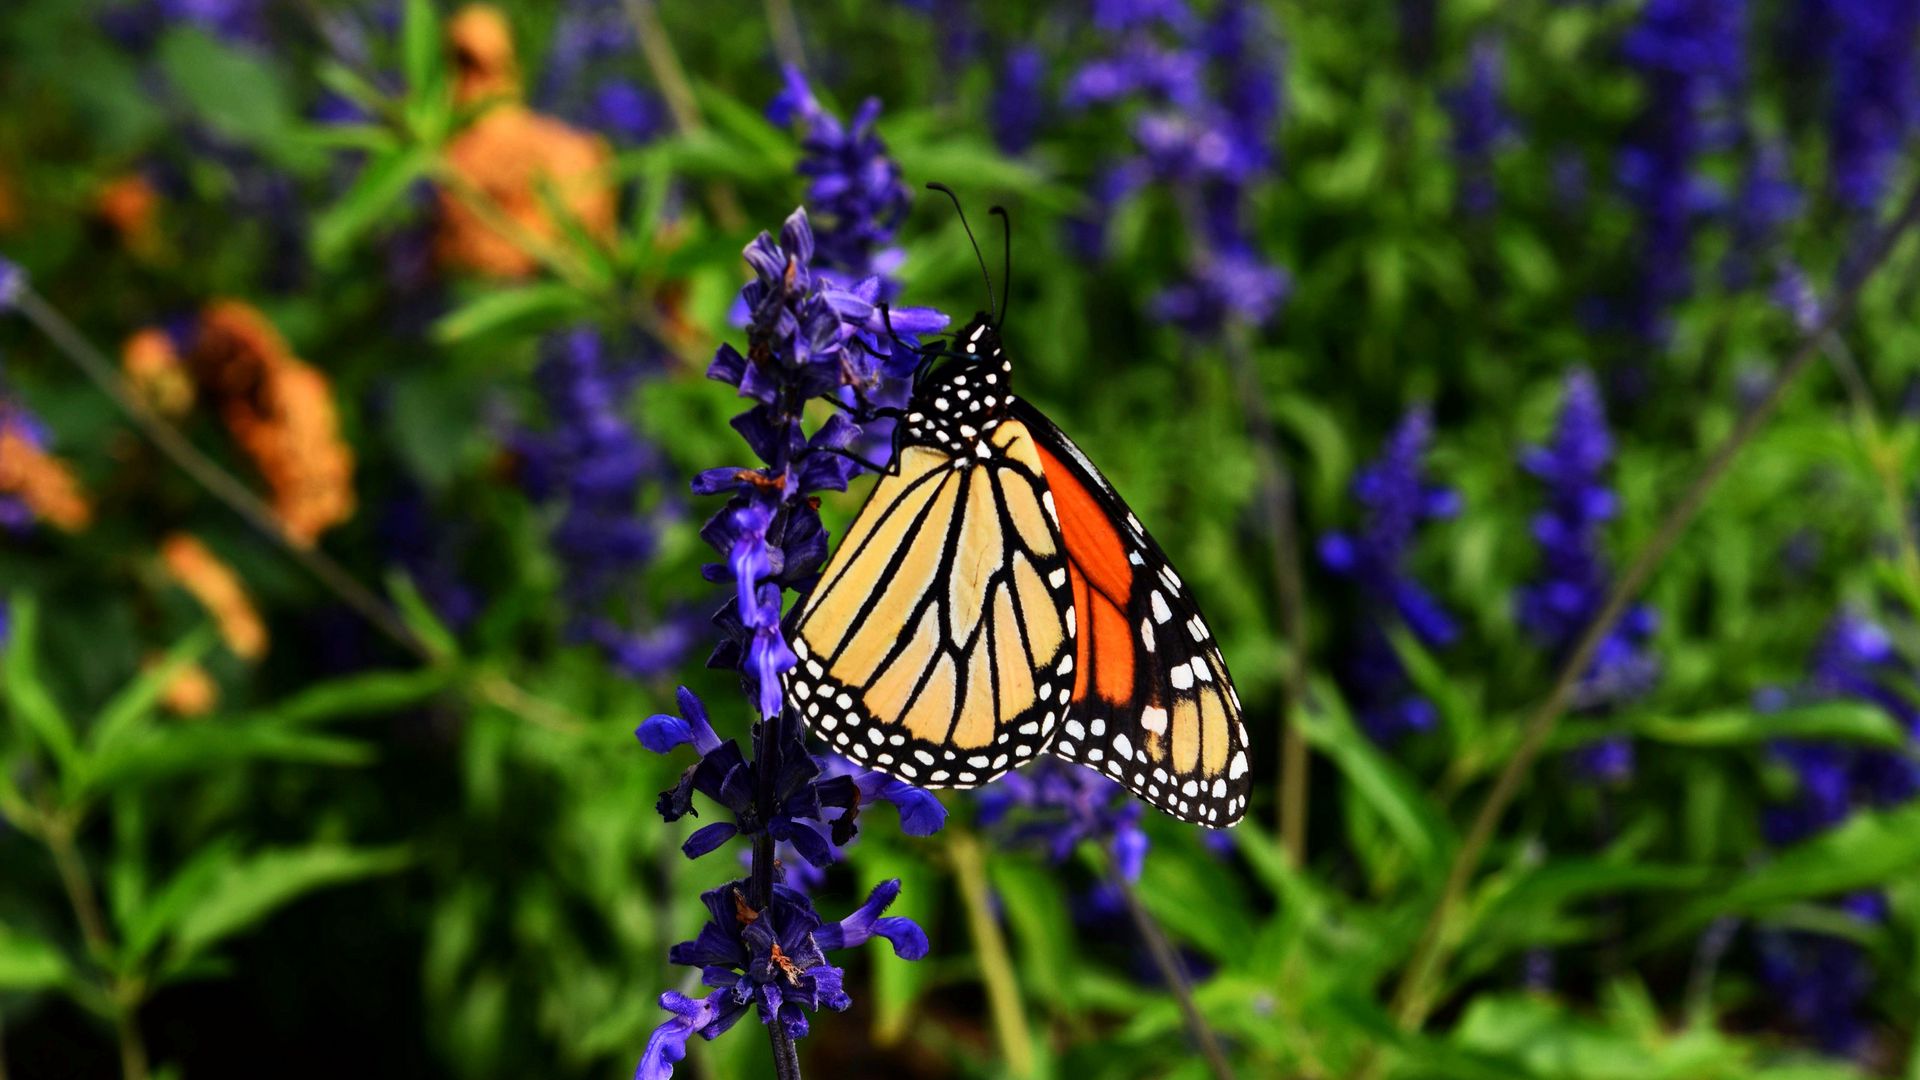 Download wallpaper 1920x1080 monarch butterfly, butterfly, pattern, wings,  flower full hd, hdtv, fhd, 1080p hd background